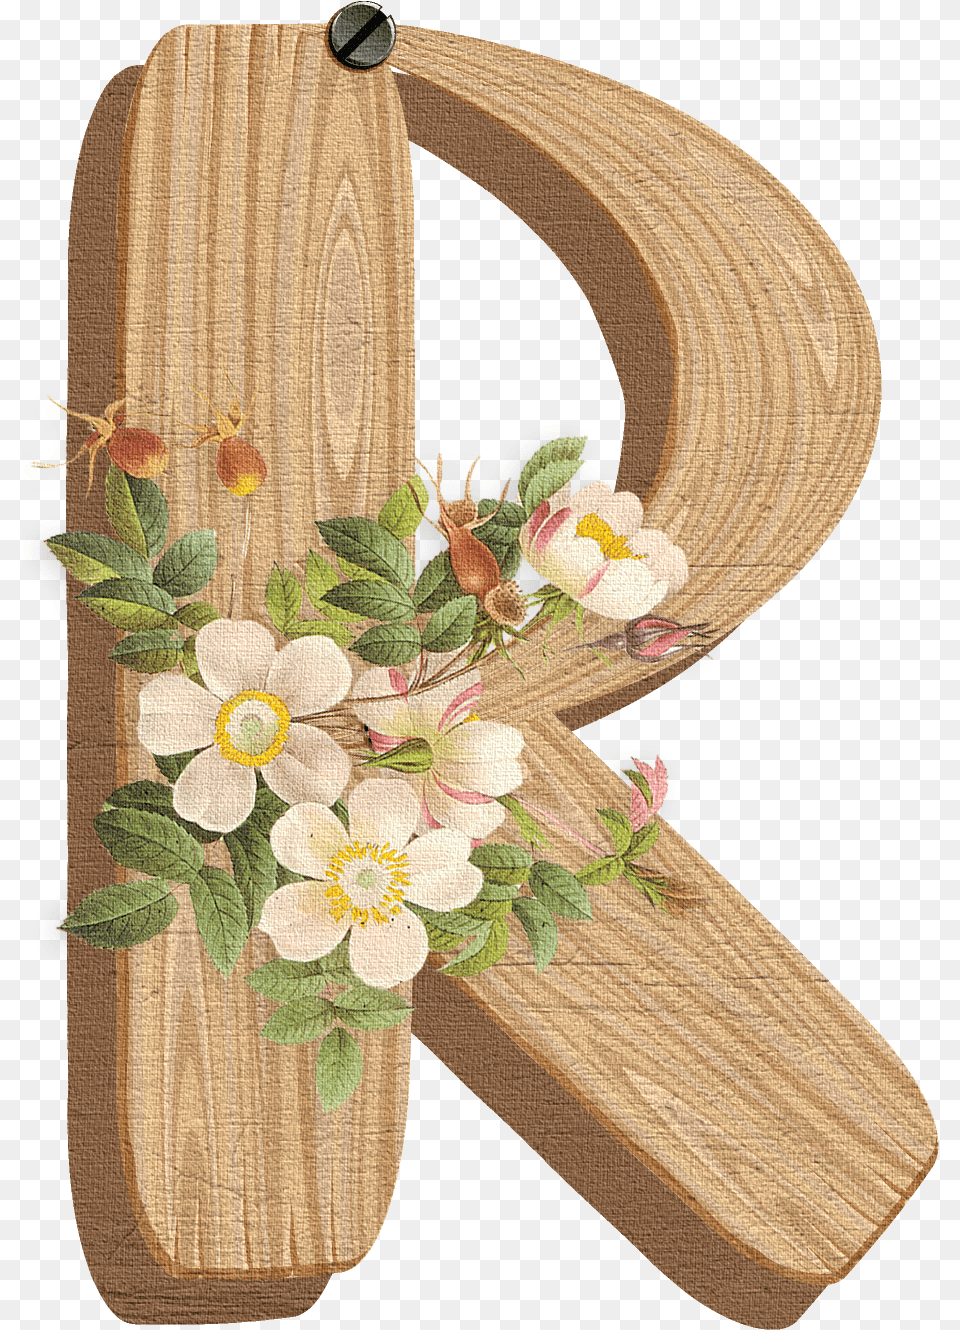 Clip Art Letter K Flower, Flower Arrangement, Plant, Wood, Floral Design Png Image